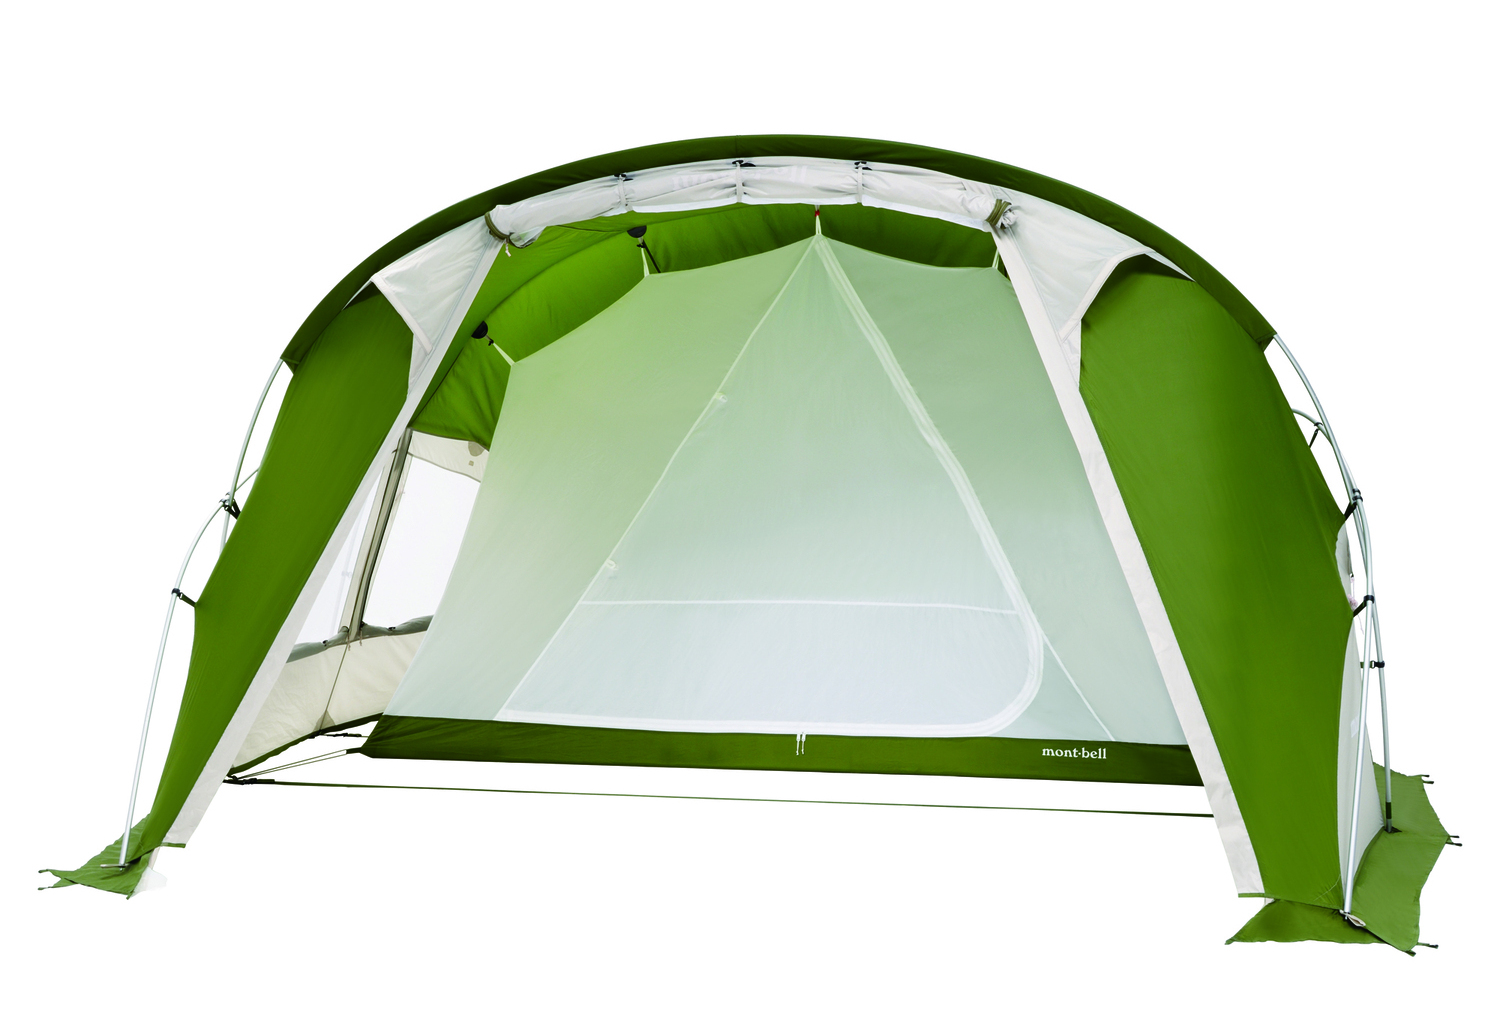 居住性が向上したモンベルの大型テントに注目！「キャンプ